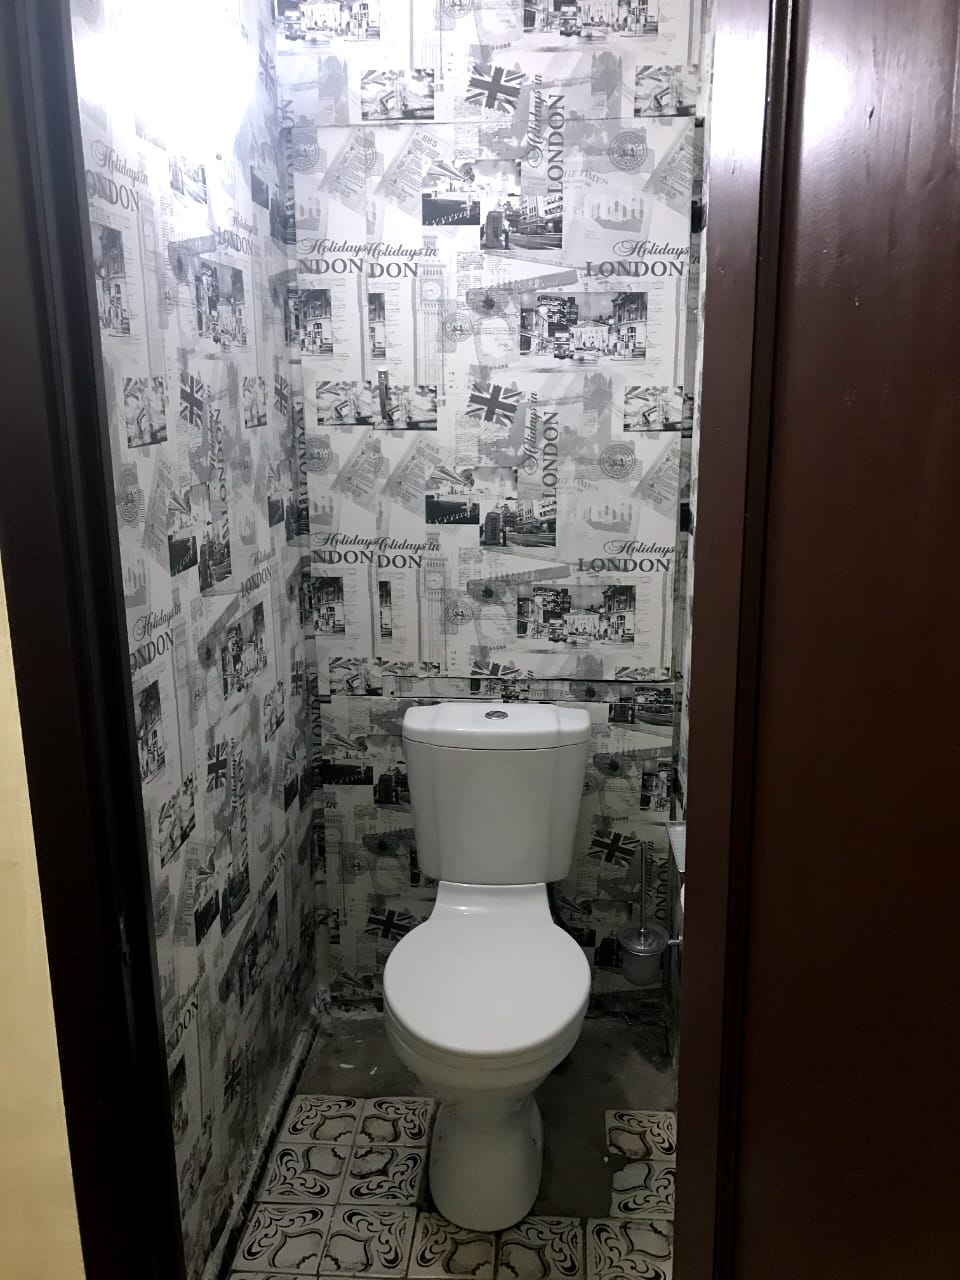 Трёхкомнатная квартира на улице Мельникова в Химках. Туалет